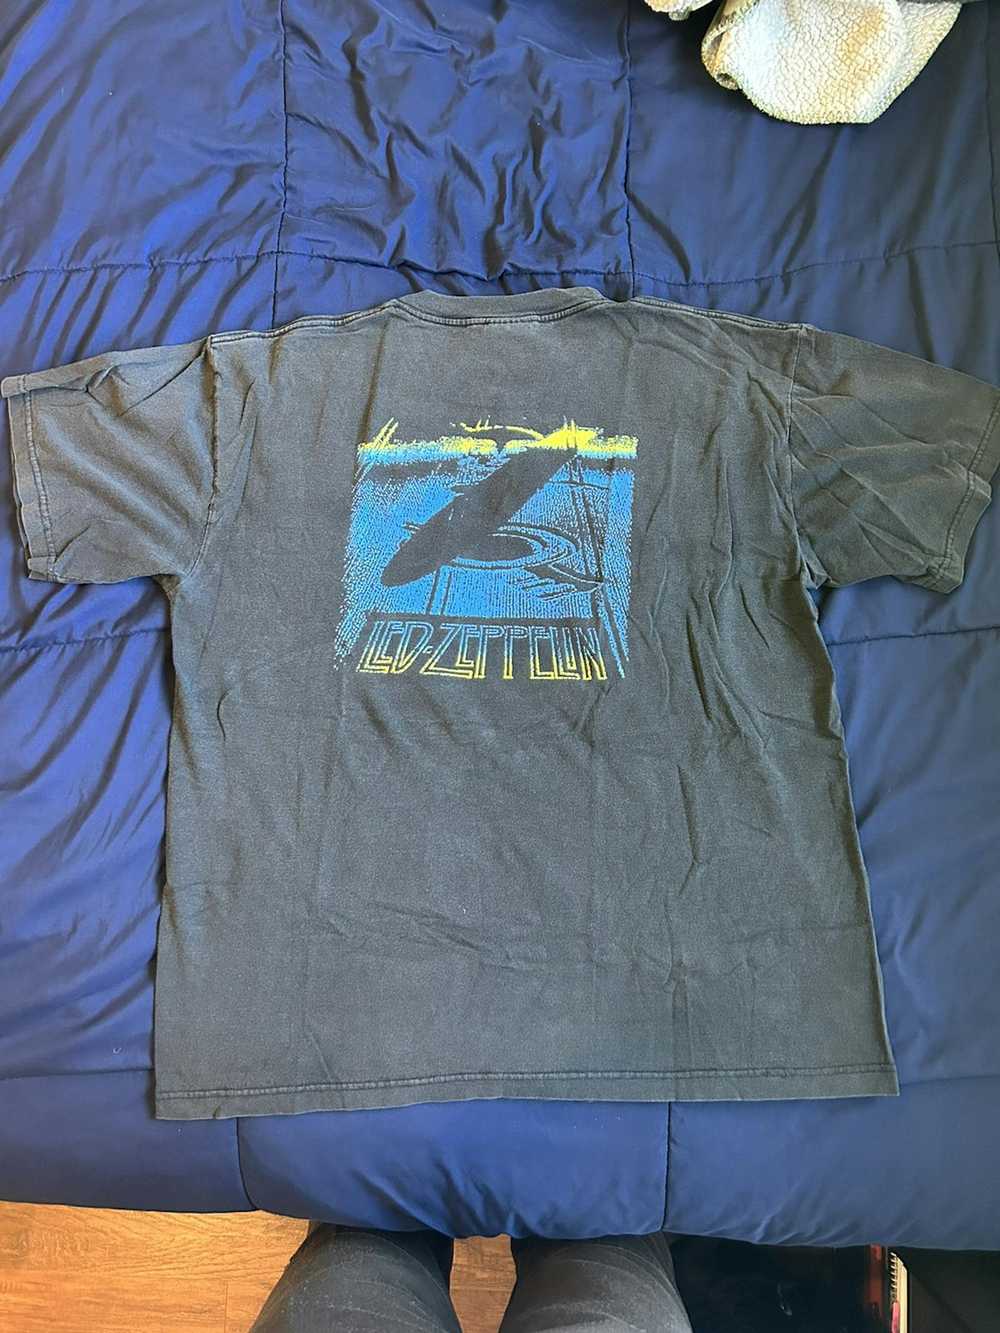 Led Zeppelin Led Zeppelin t-shirt - image 2